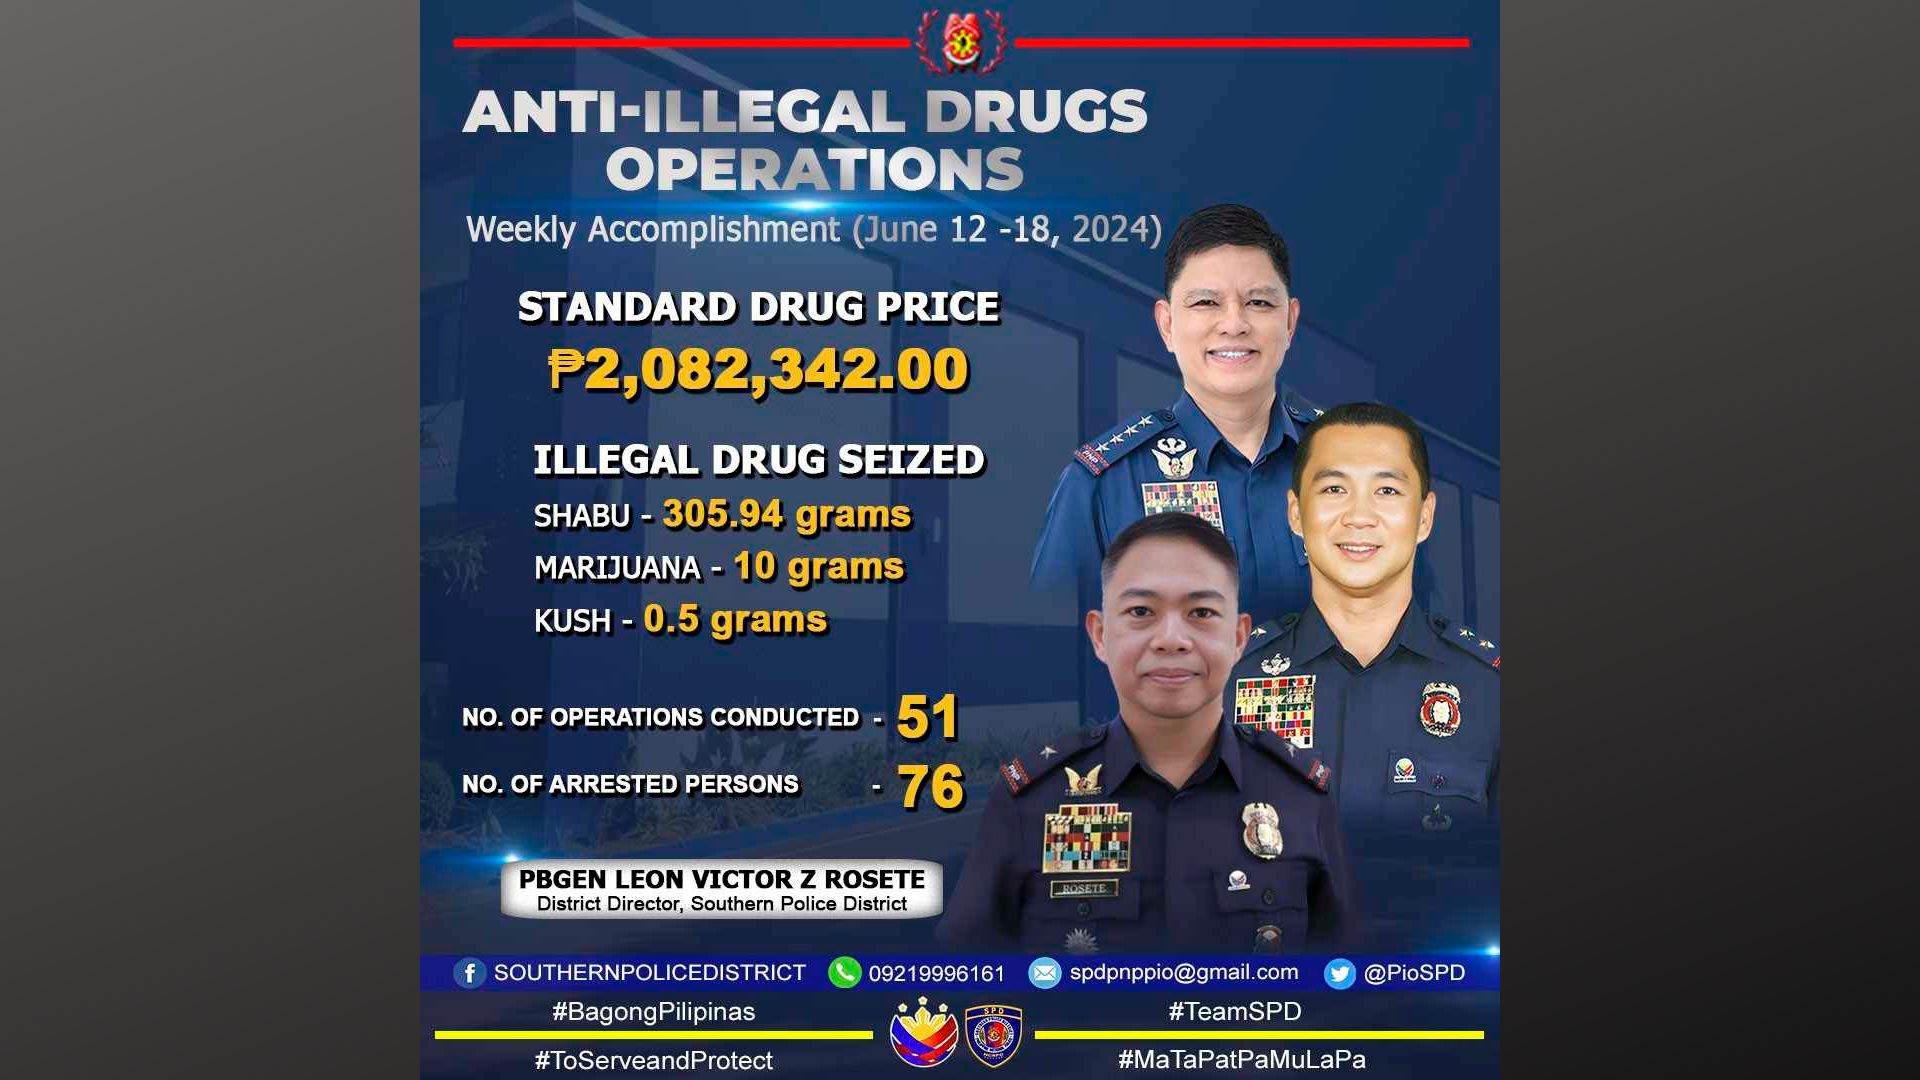 P2M illegal drugs nakumpiska ng SPD week-long ops